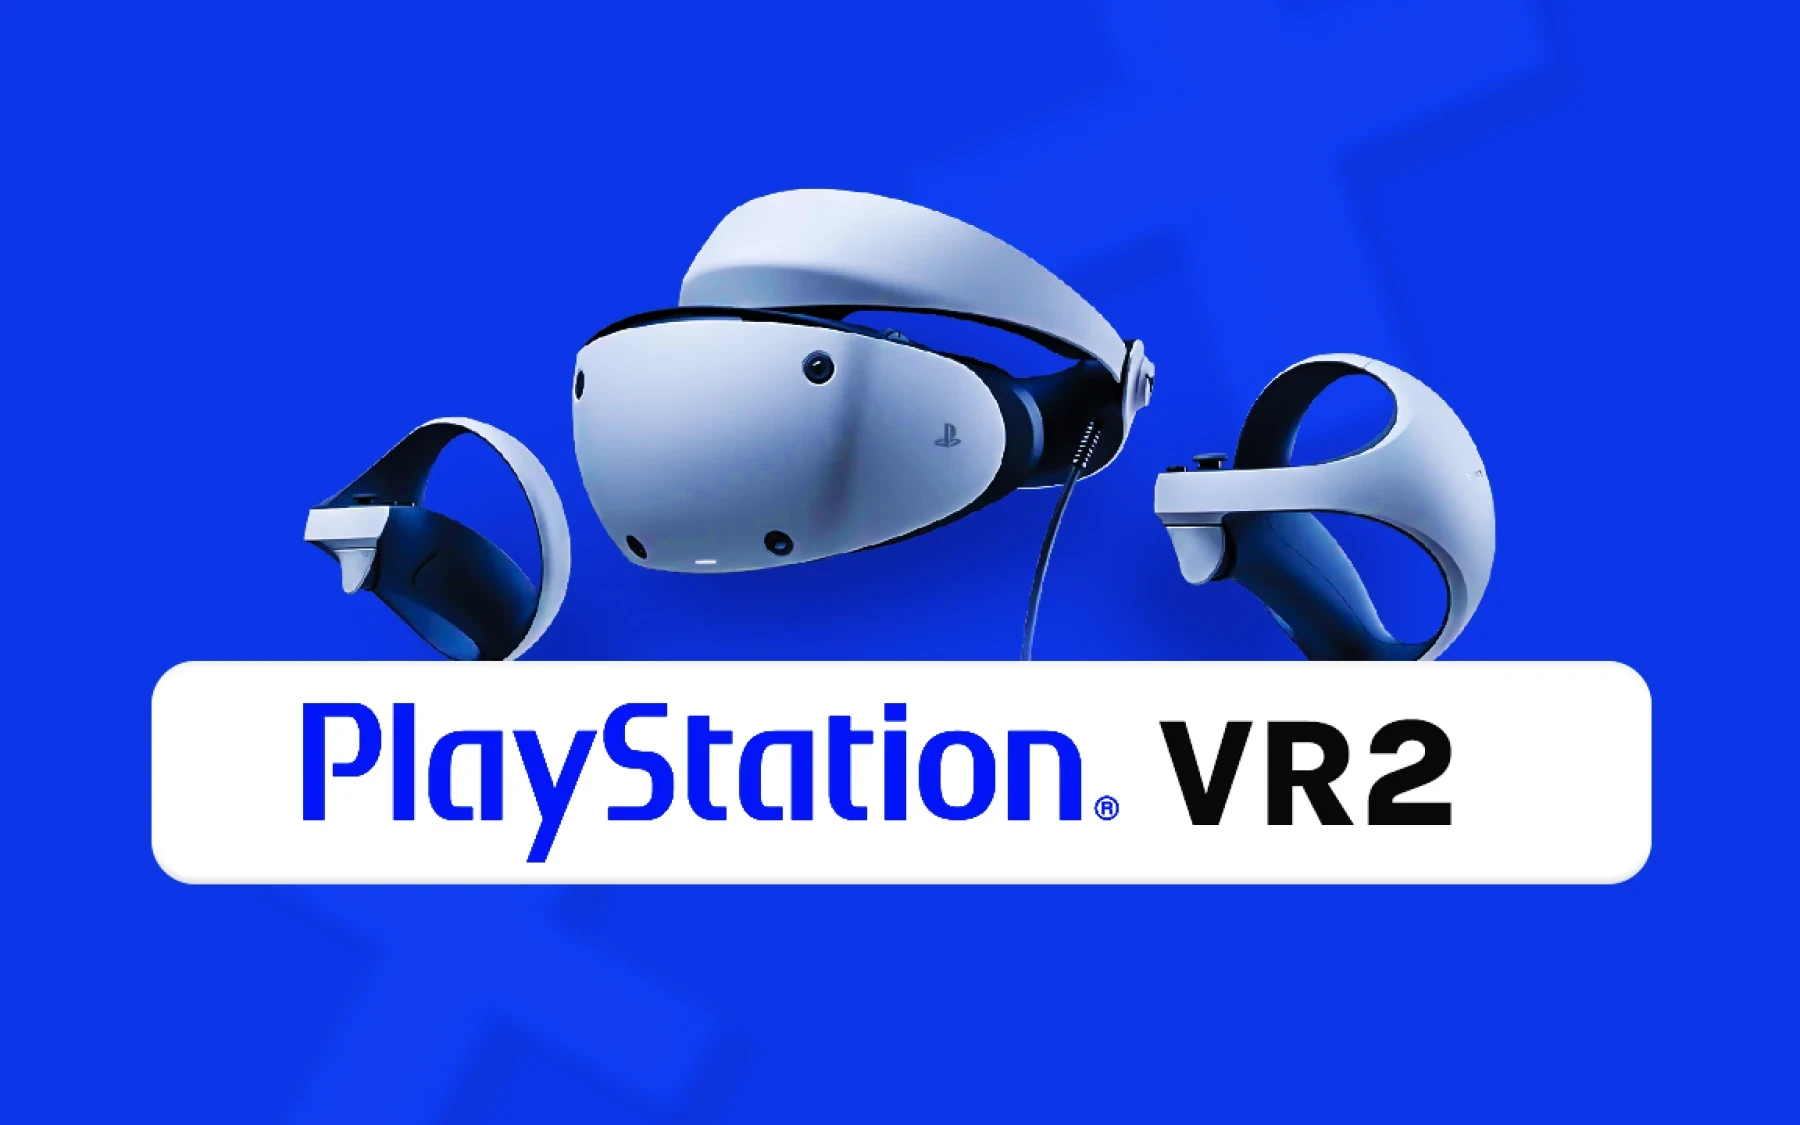 Le nouveau PlayStation VR2 est arrivé!